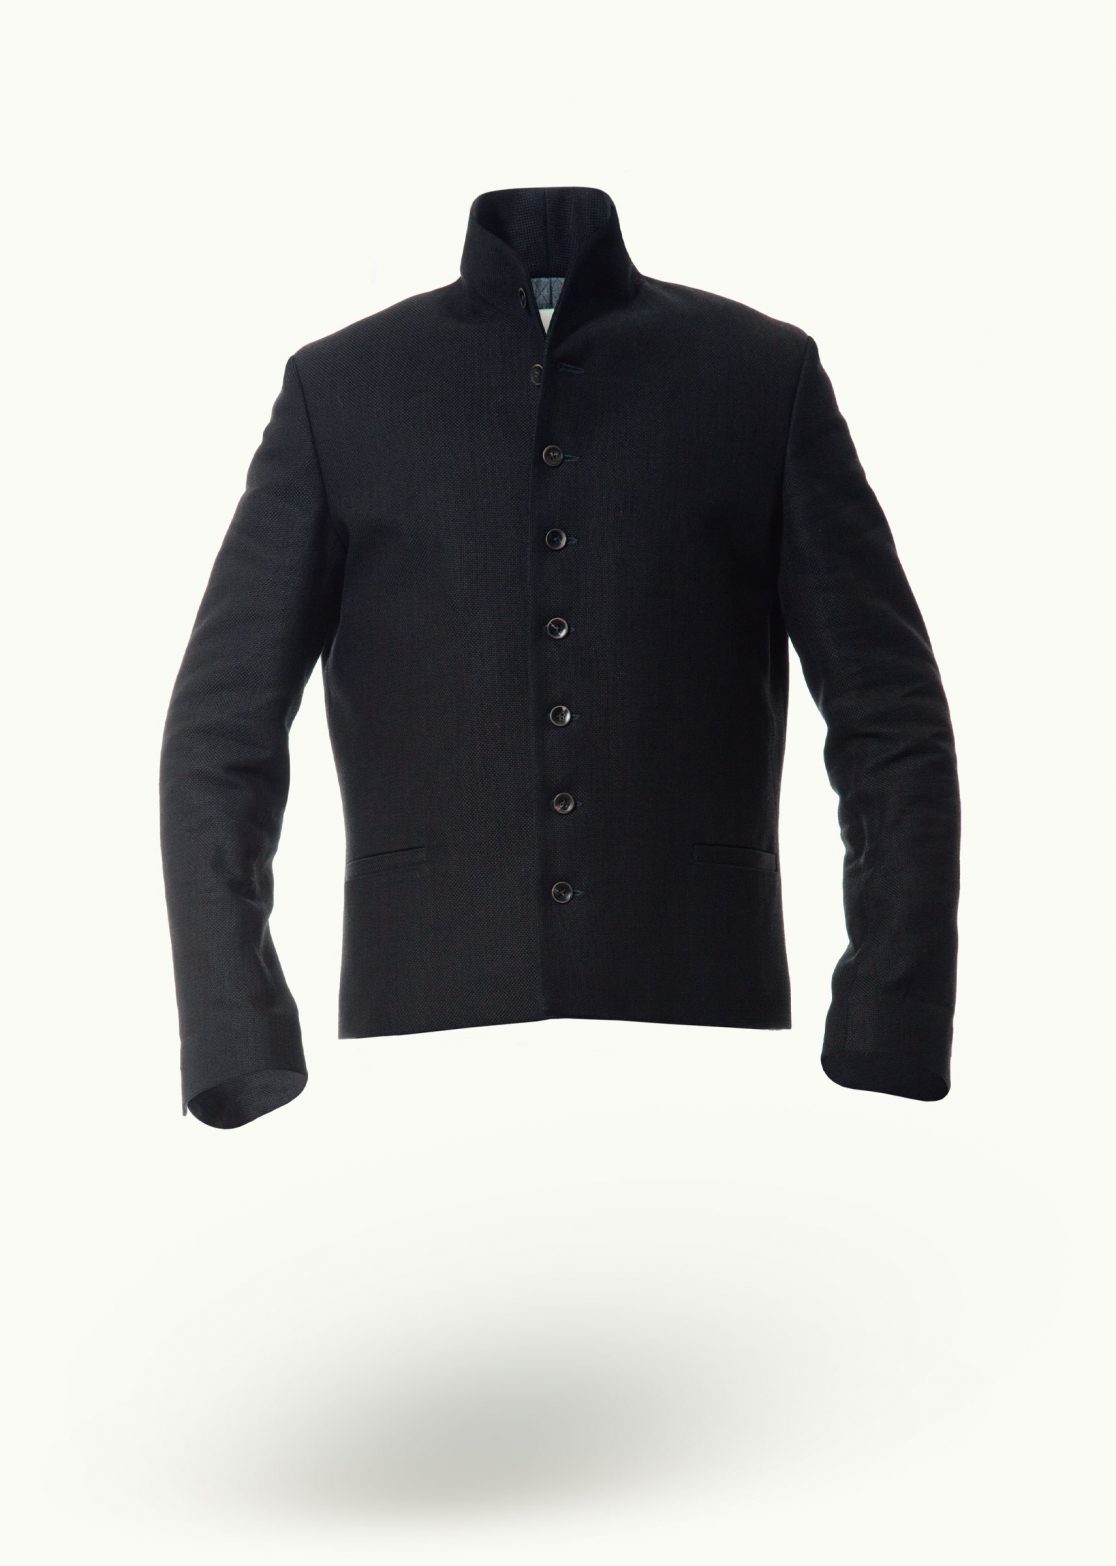 Men - Jackets - Outerwear - Emperor’s Doublet Indigo Deep Image Primary